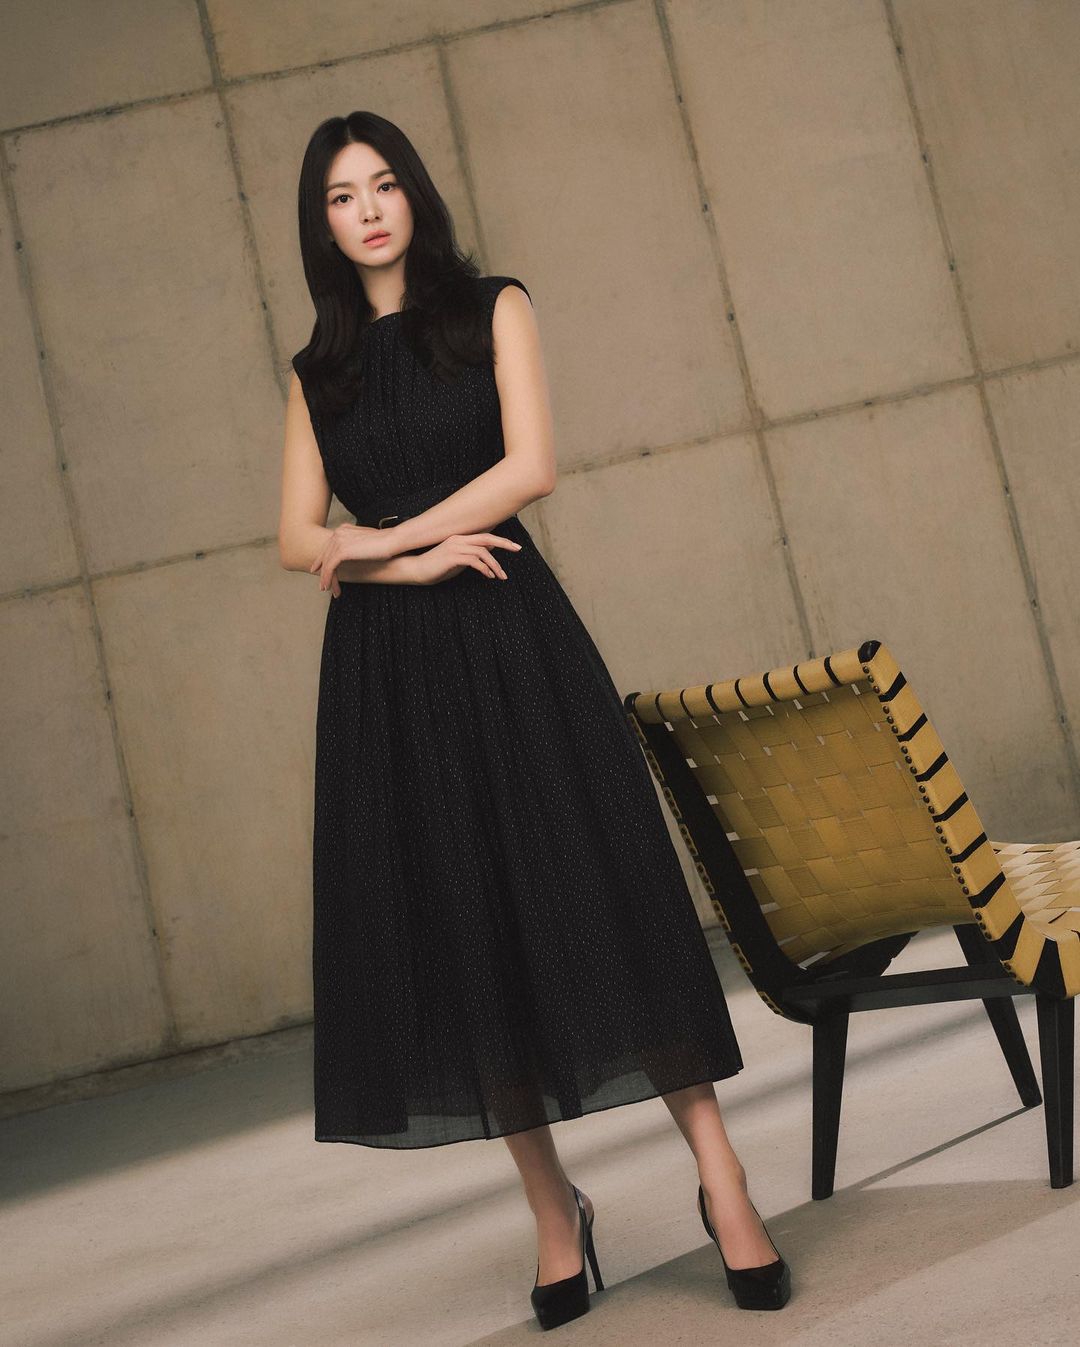 Phong cách thời trang đa dạng của Song Hye Kyo